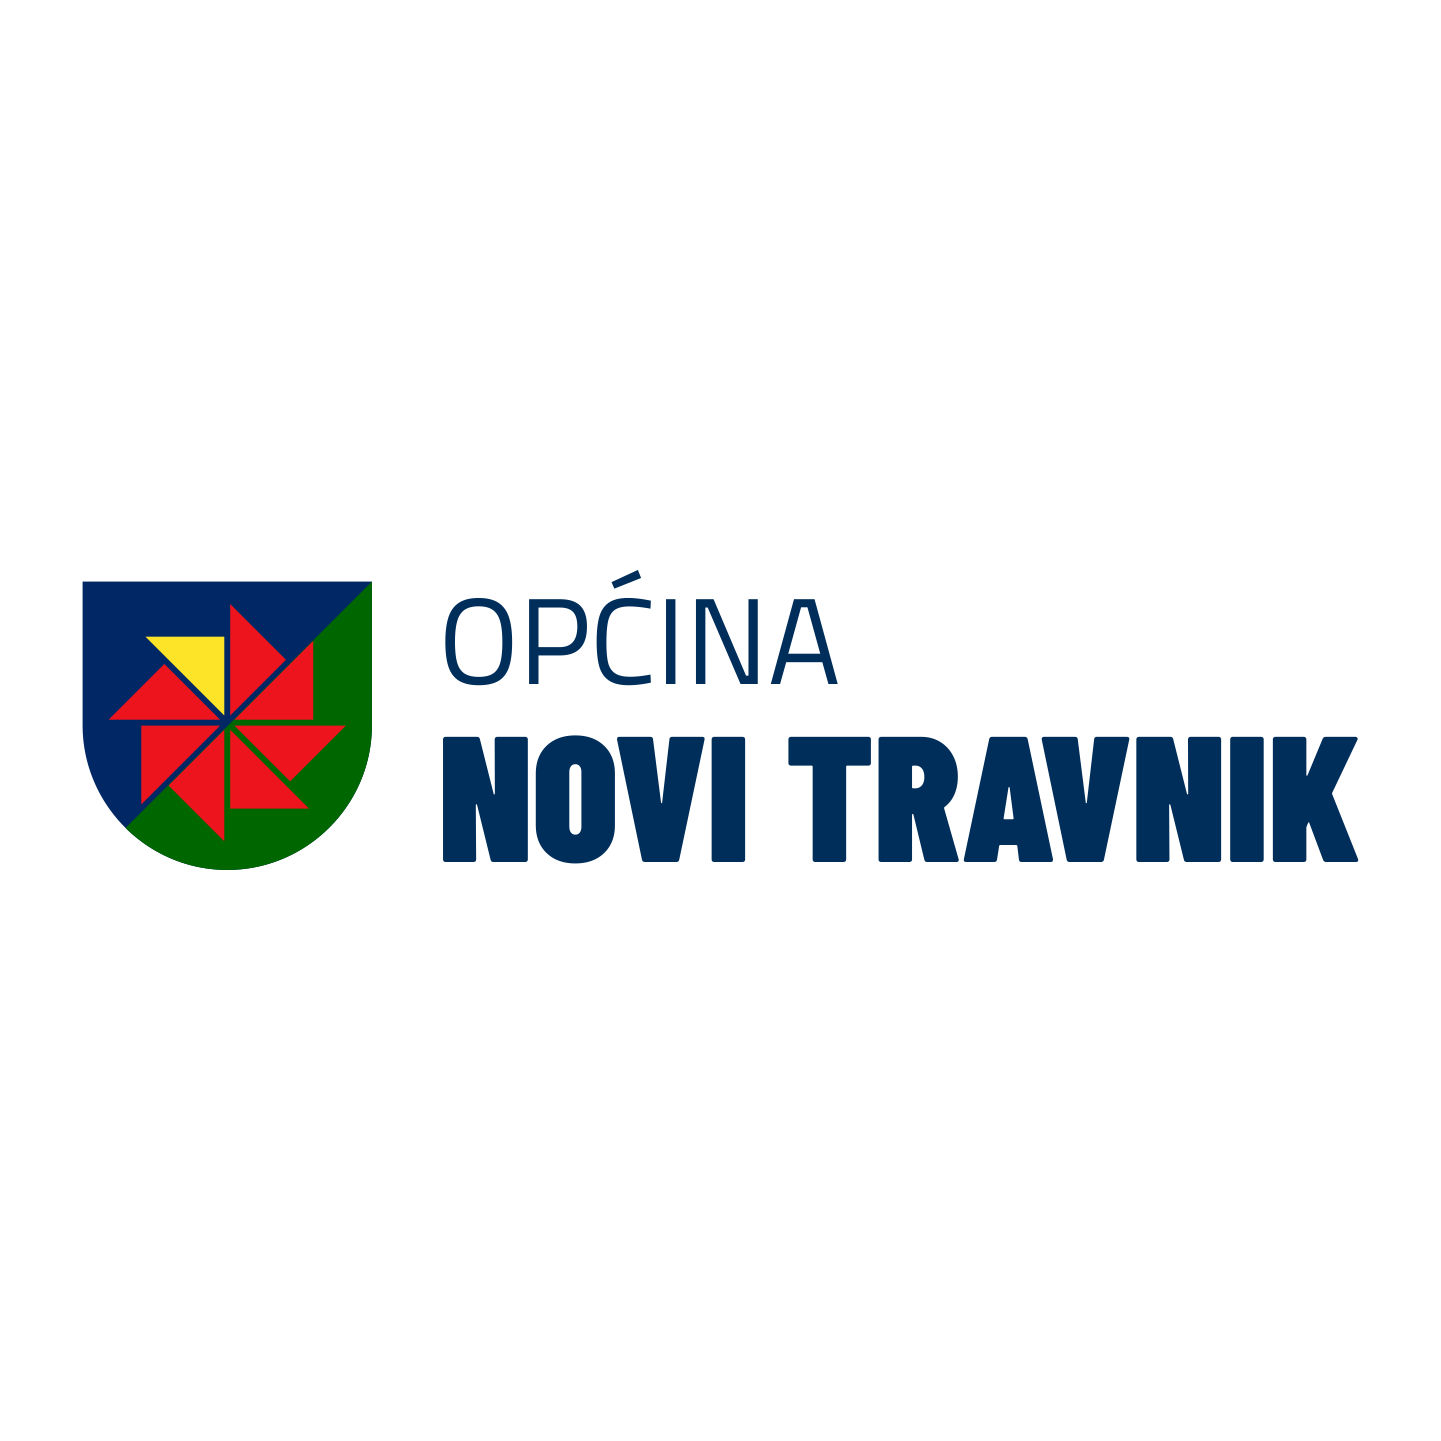 opcina-novitravnik-logo.png